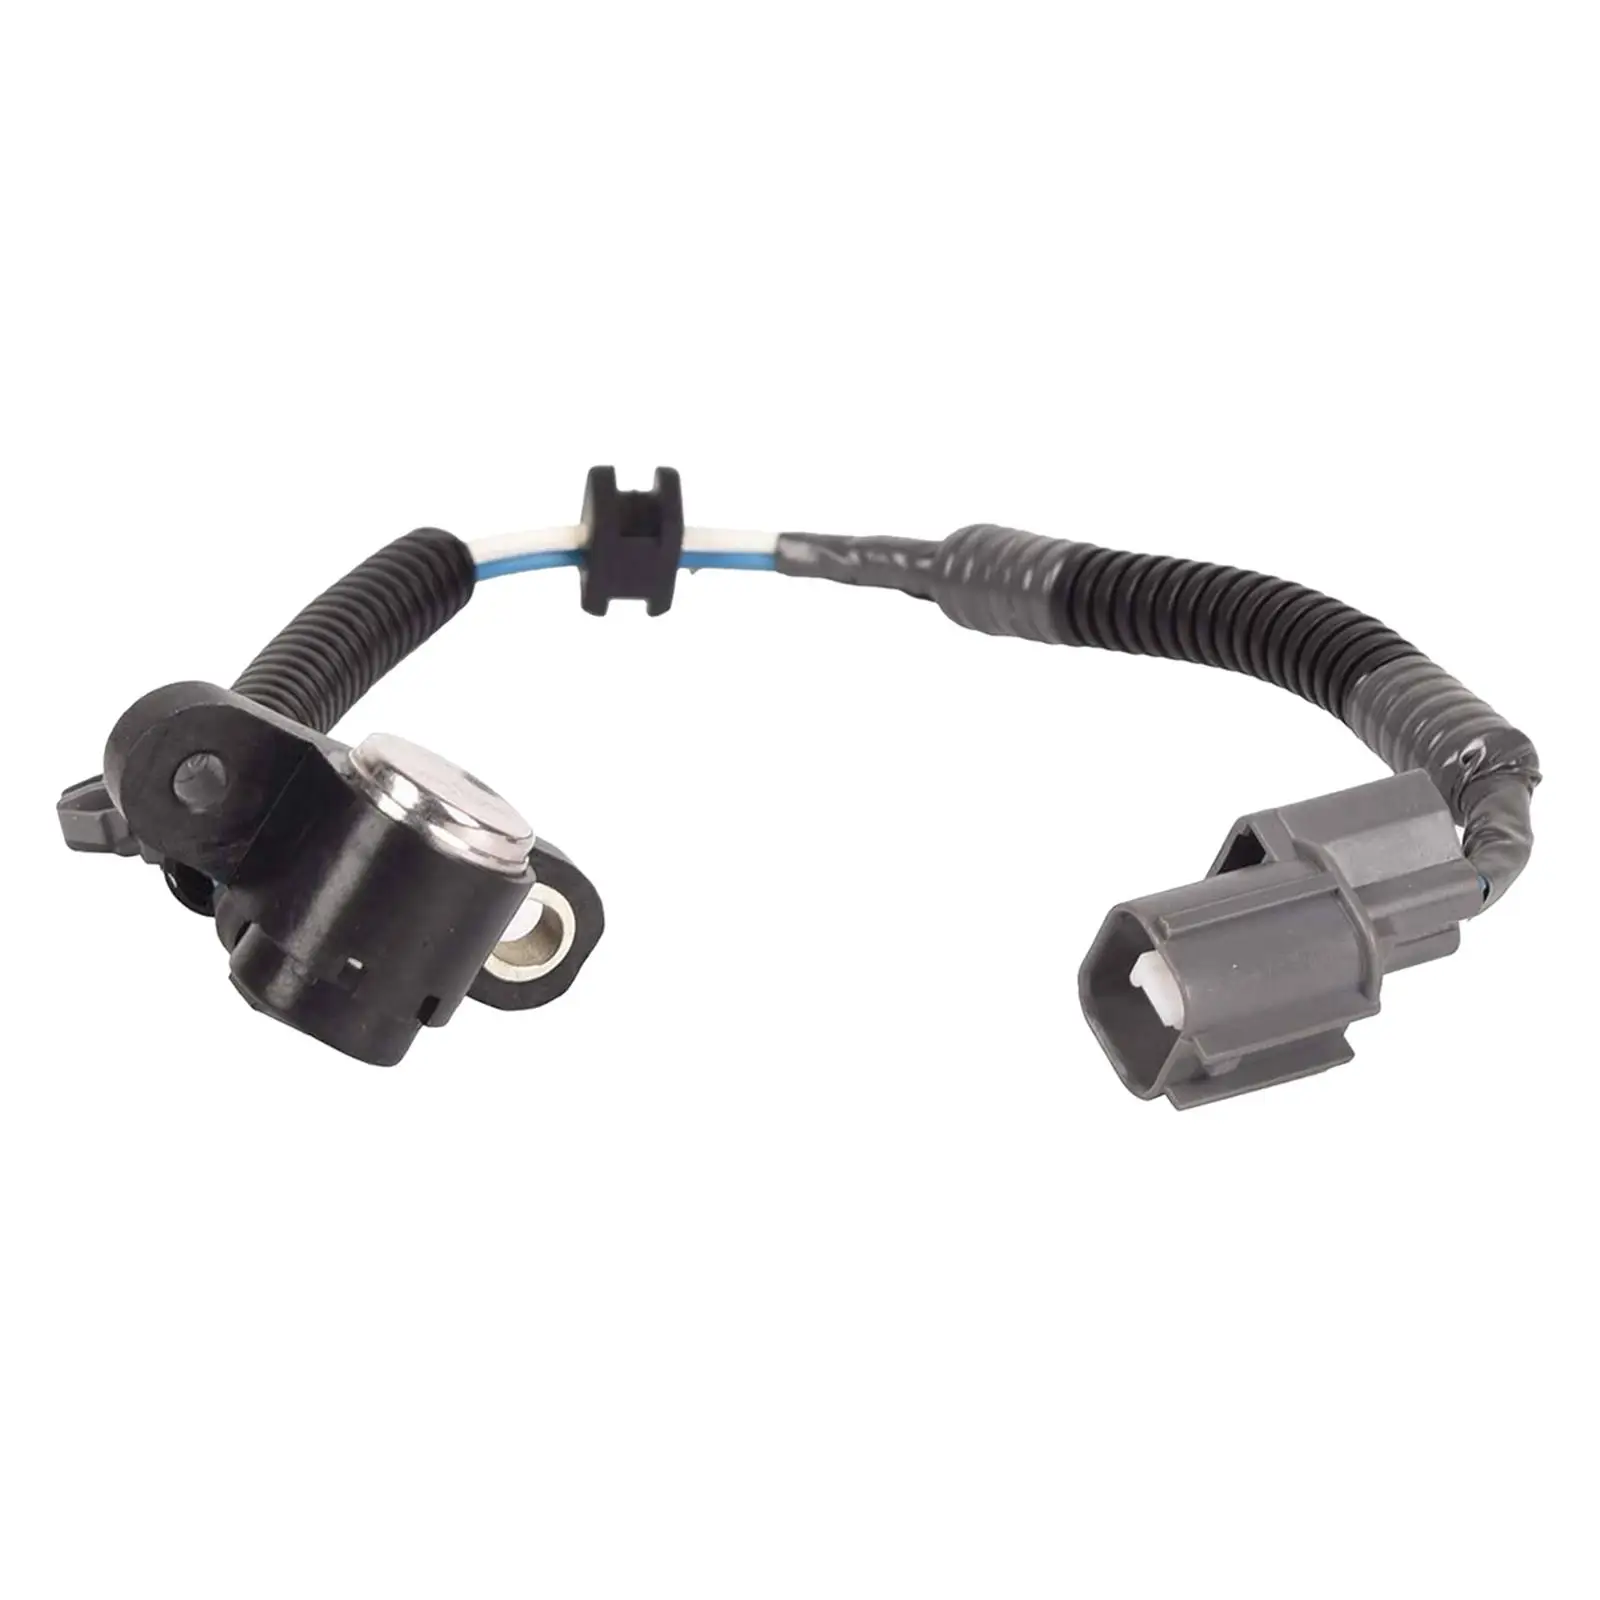 Car Crankshaft PULSE Position Sensor 37500P72A01 Ckp2083 37500-P72-A01 for Civic Del Sol Acura Integra Auto Accessories